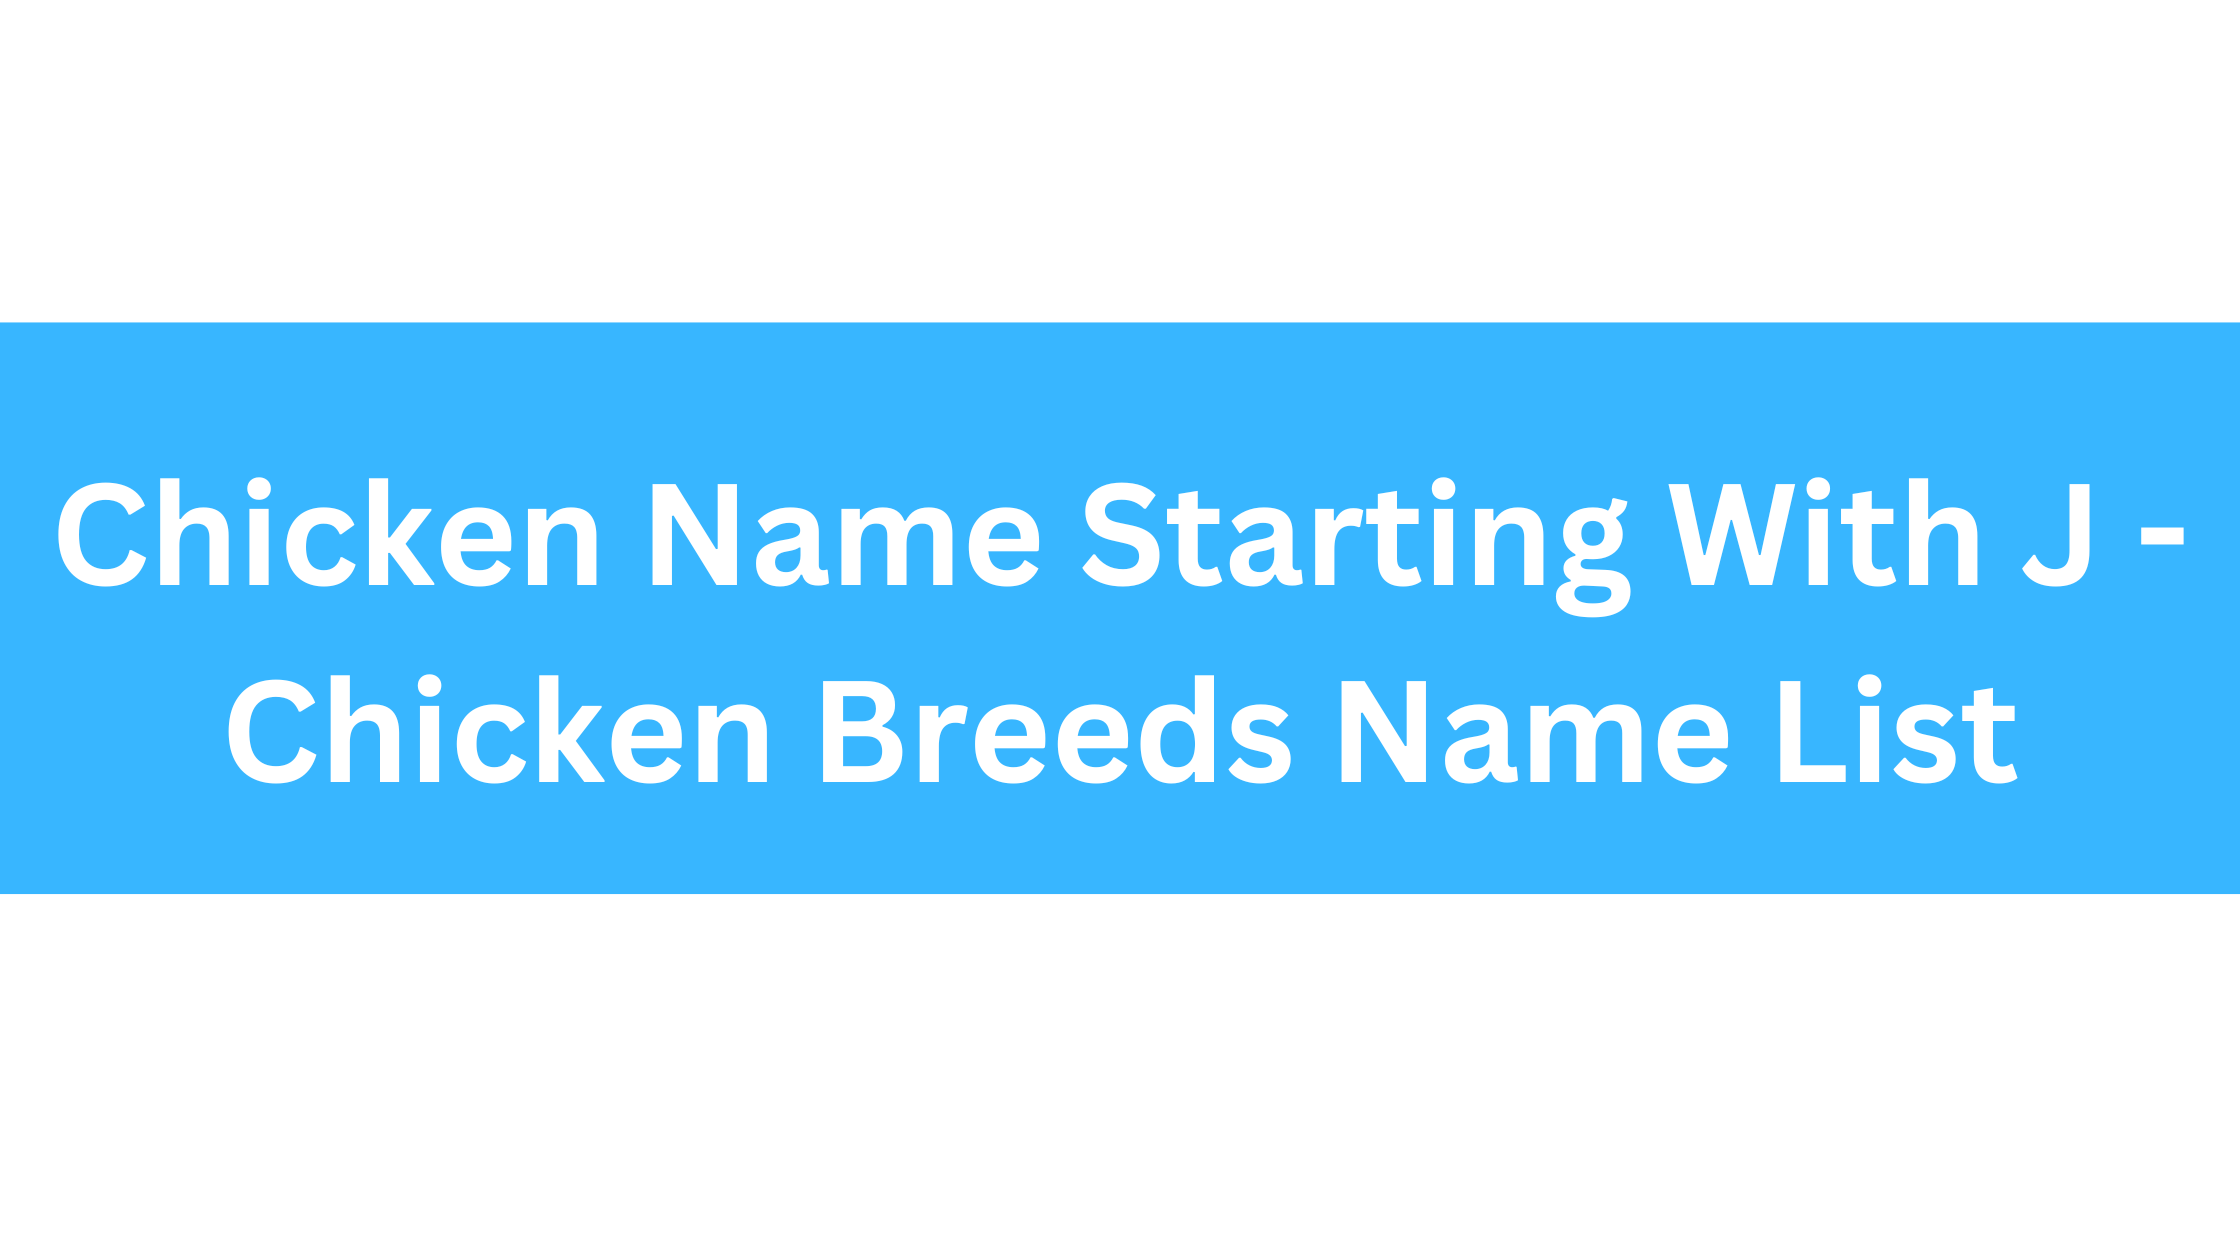 Chicken Breeds That Start With J